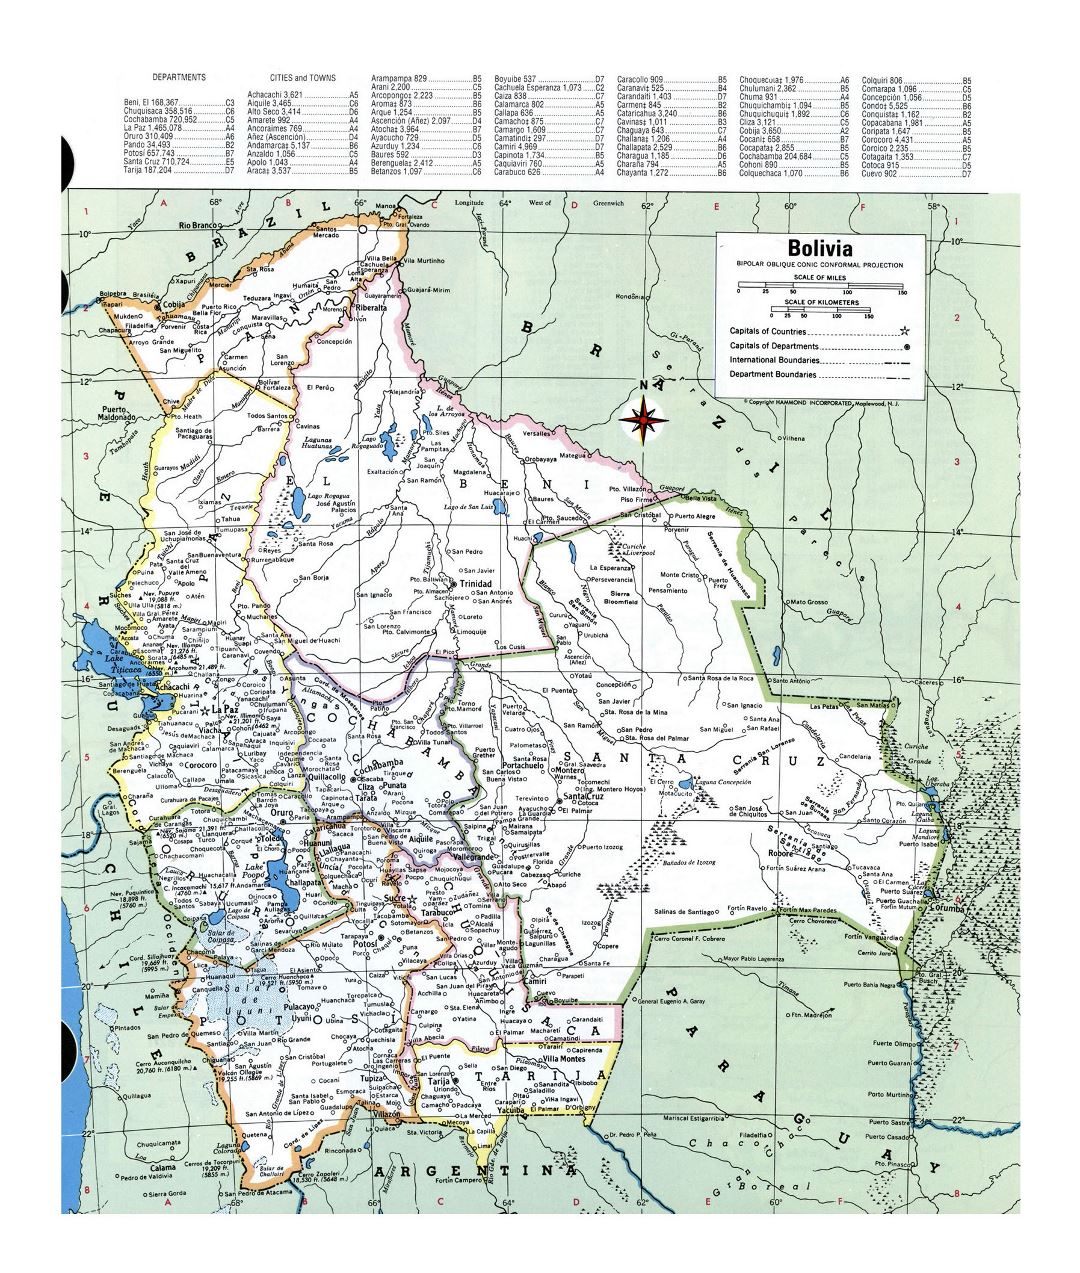 Grande detallado mapa político y administrativo de Bolivia con ciudades